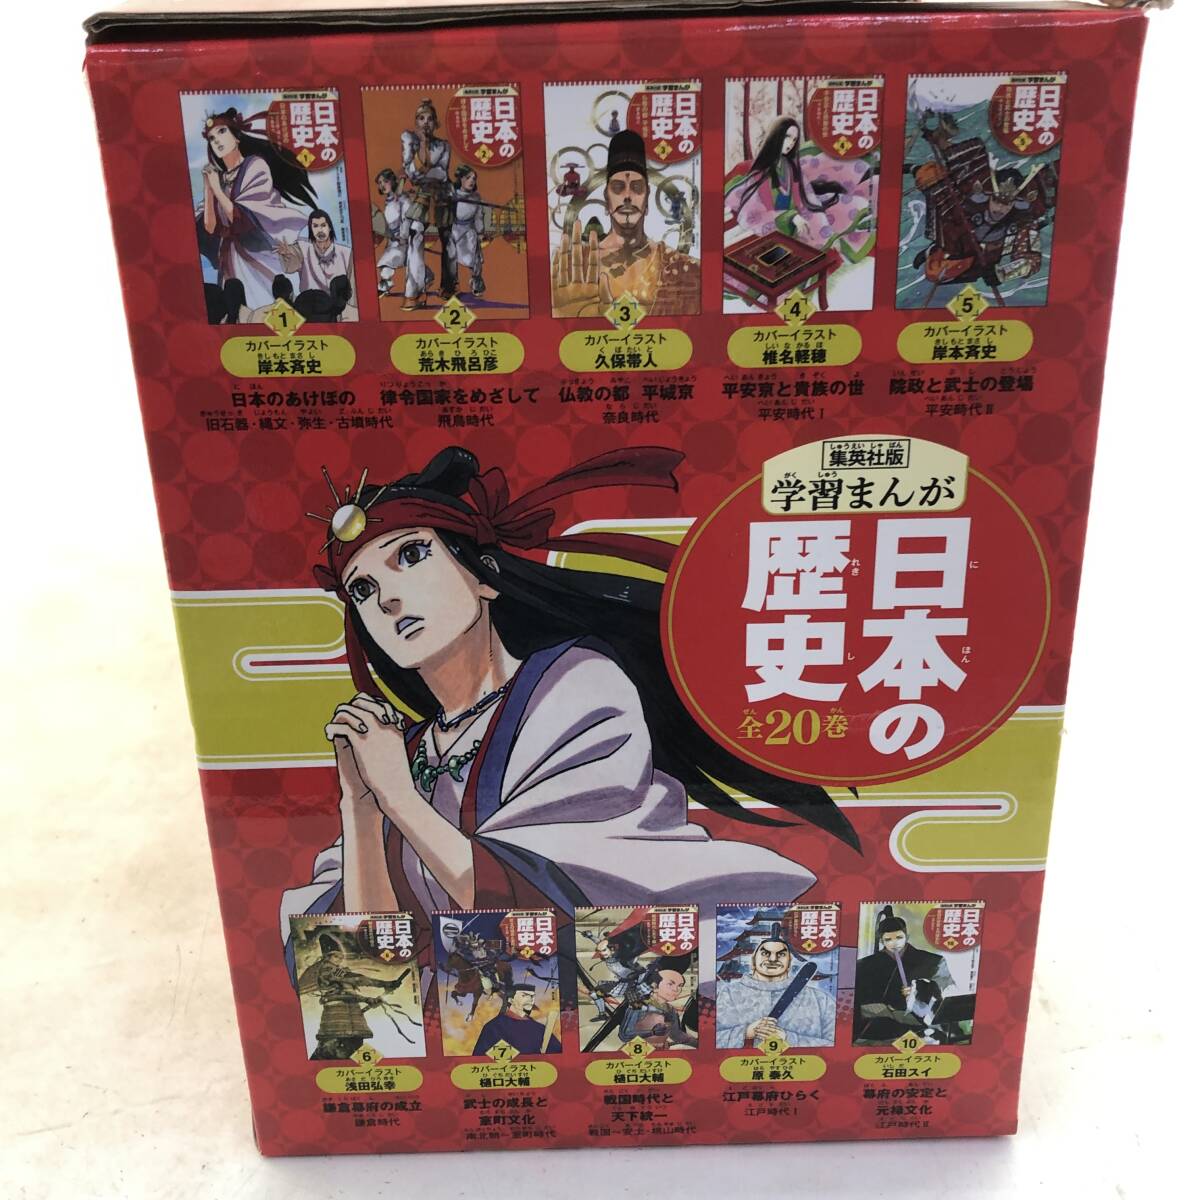 [ все тома в комплекте ] Shueisha версия учеба ... японская история все 20 шт комплект все новый версия / с футляром ( повреждение есть )/ учебные комиксы-манга / комикс 